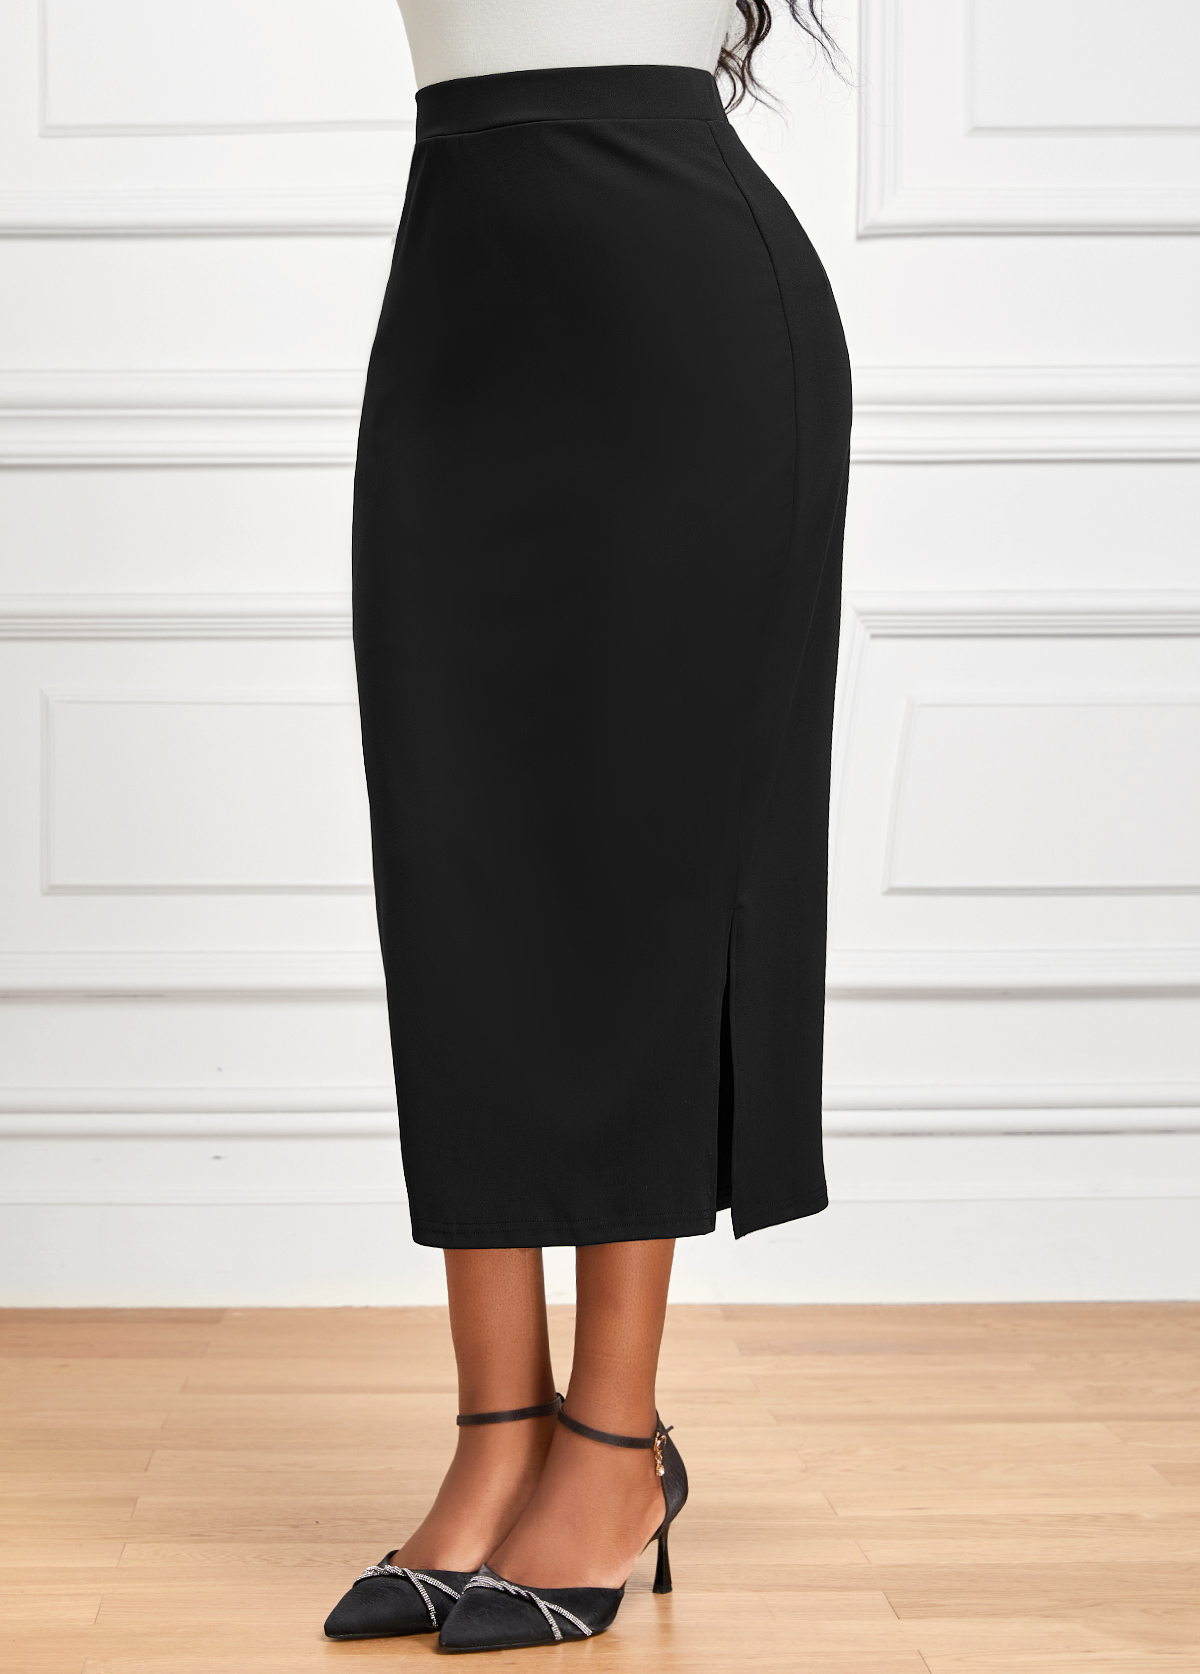 Side Split Elastic Waist Black Bodycon Skirt